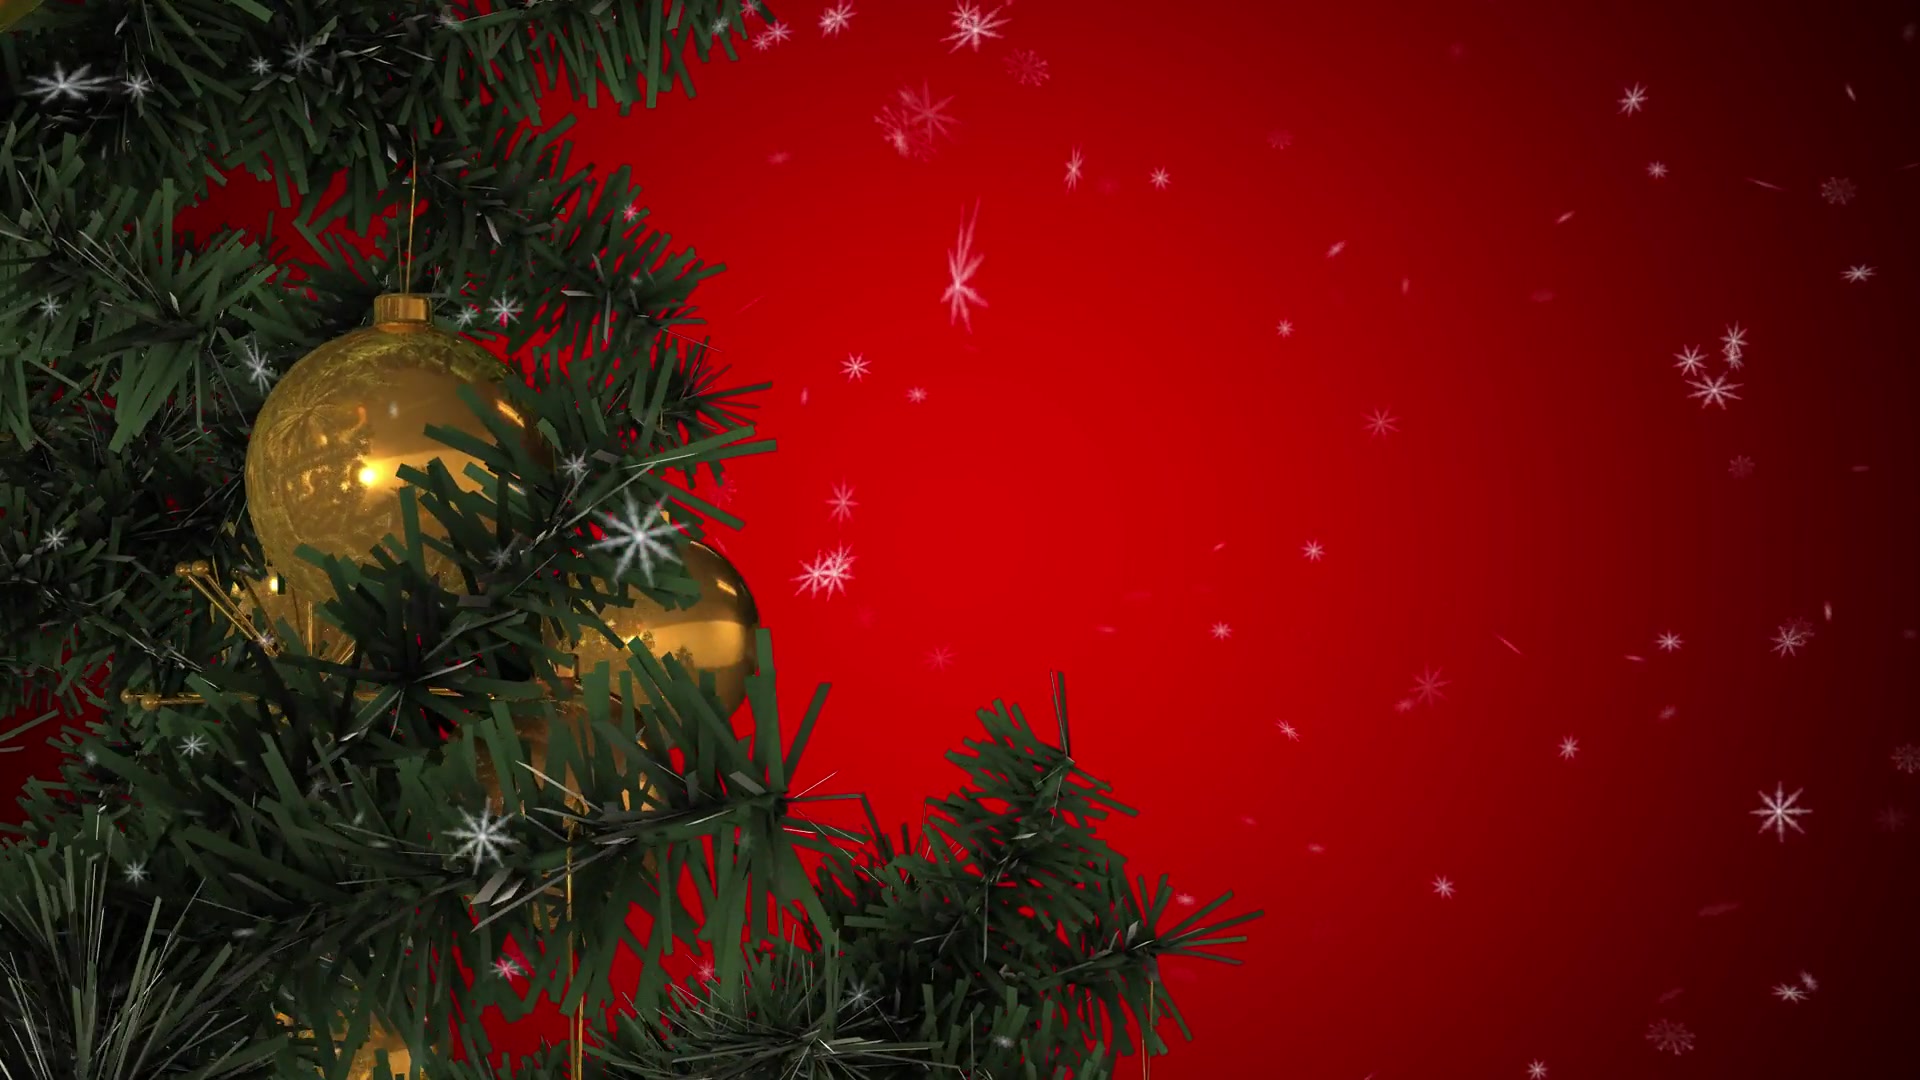 Rotating Christmas Tree Videohive 22935986 Motion Graphics Image 3